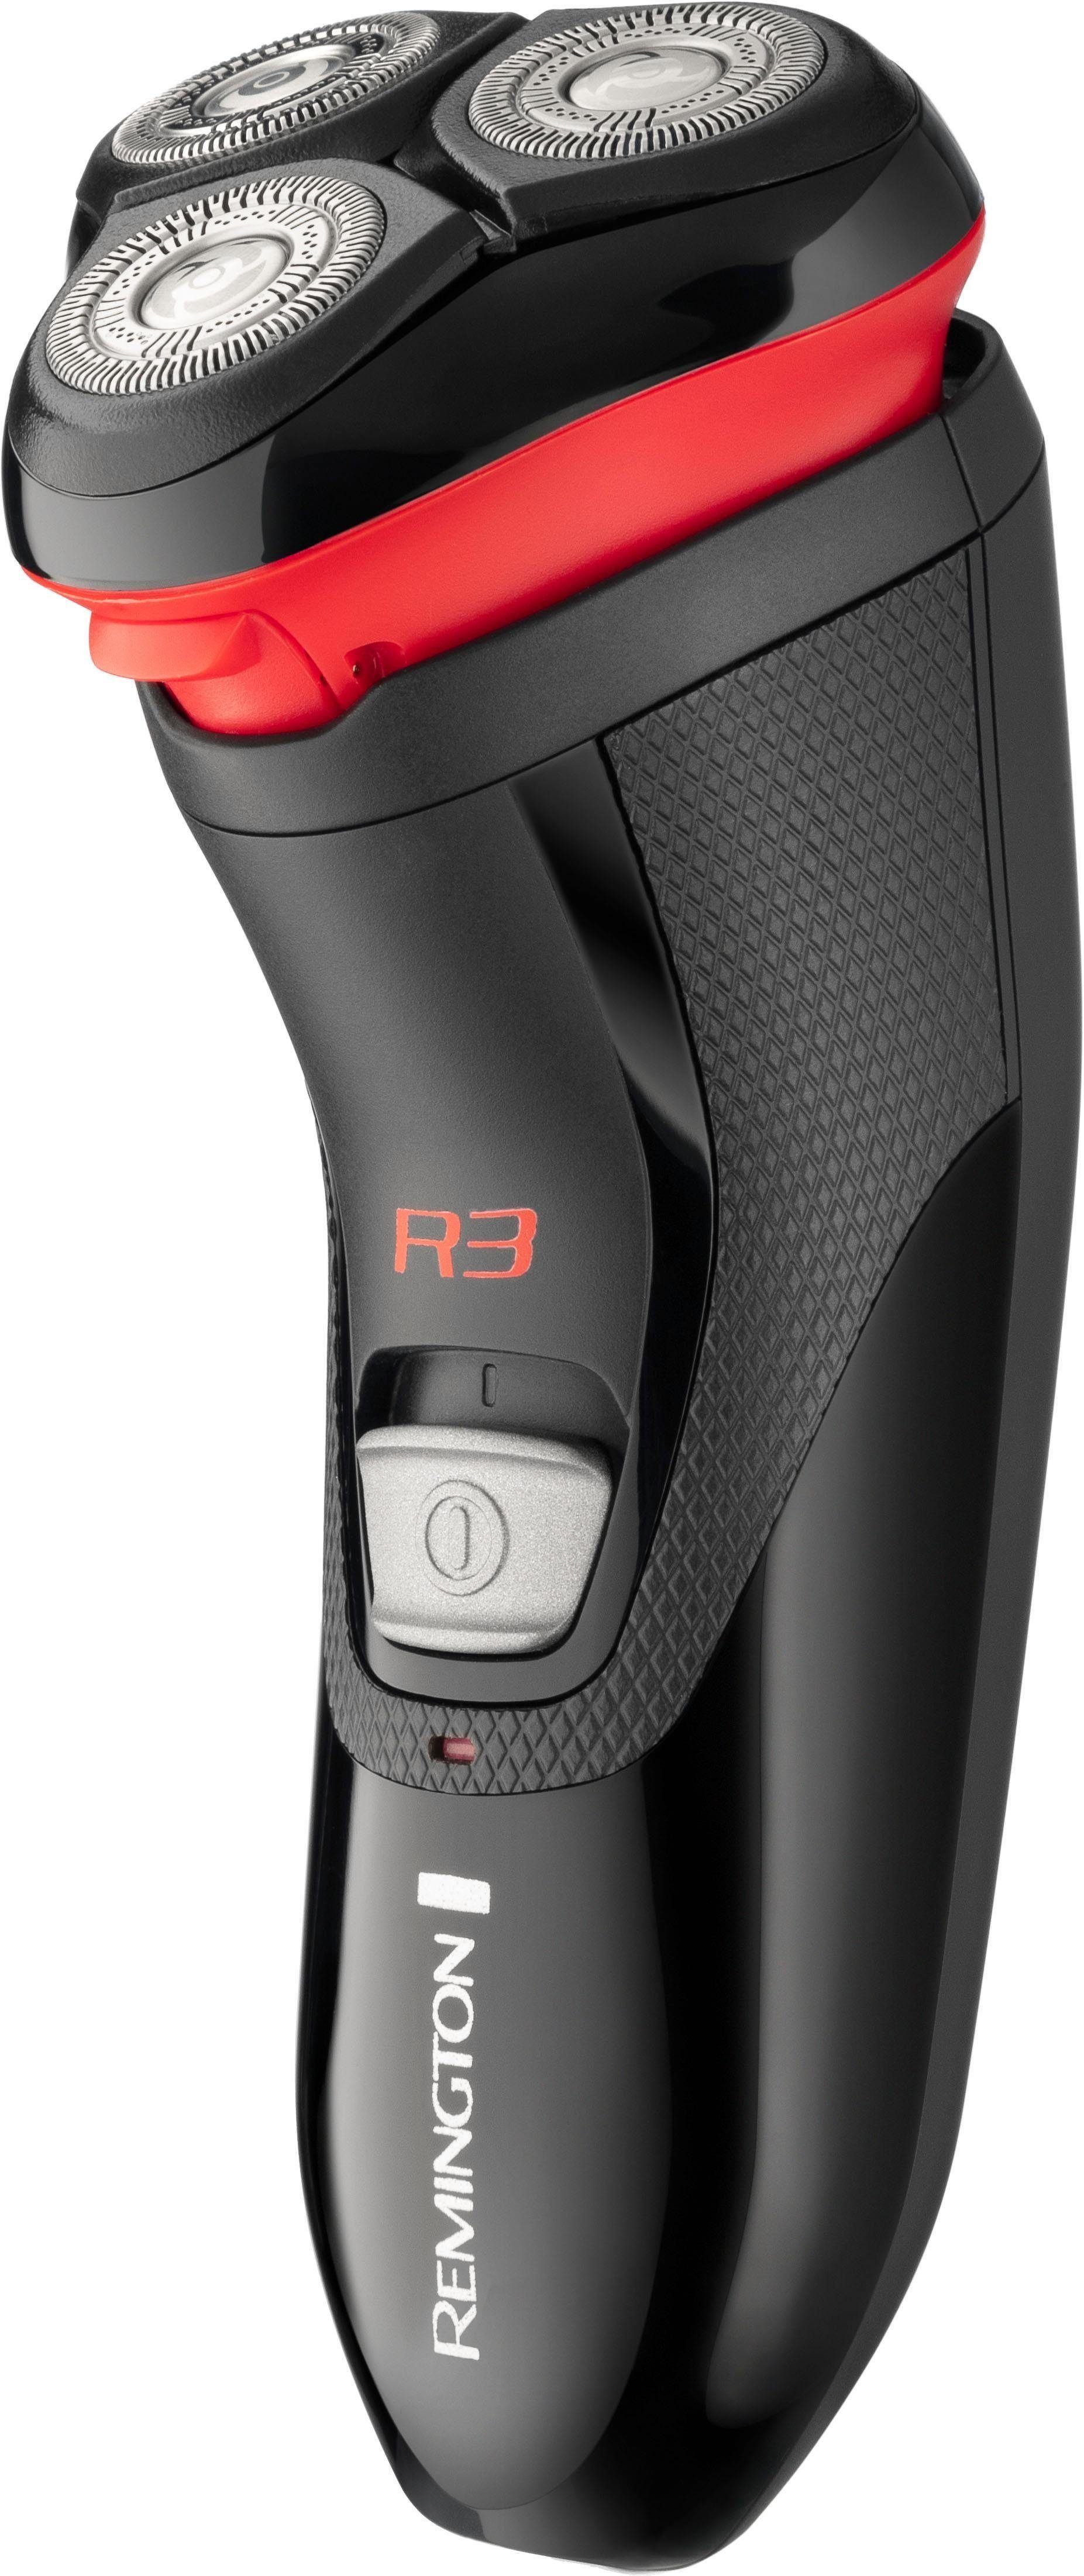 und 1, Scherkopf Maximaler Elektrorasierer flexible TPE flexiblen Aufsätze: Remington R3000, Scherköpfe Hautkontakt durch